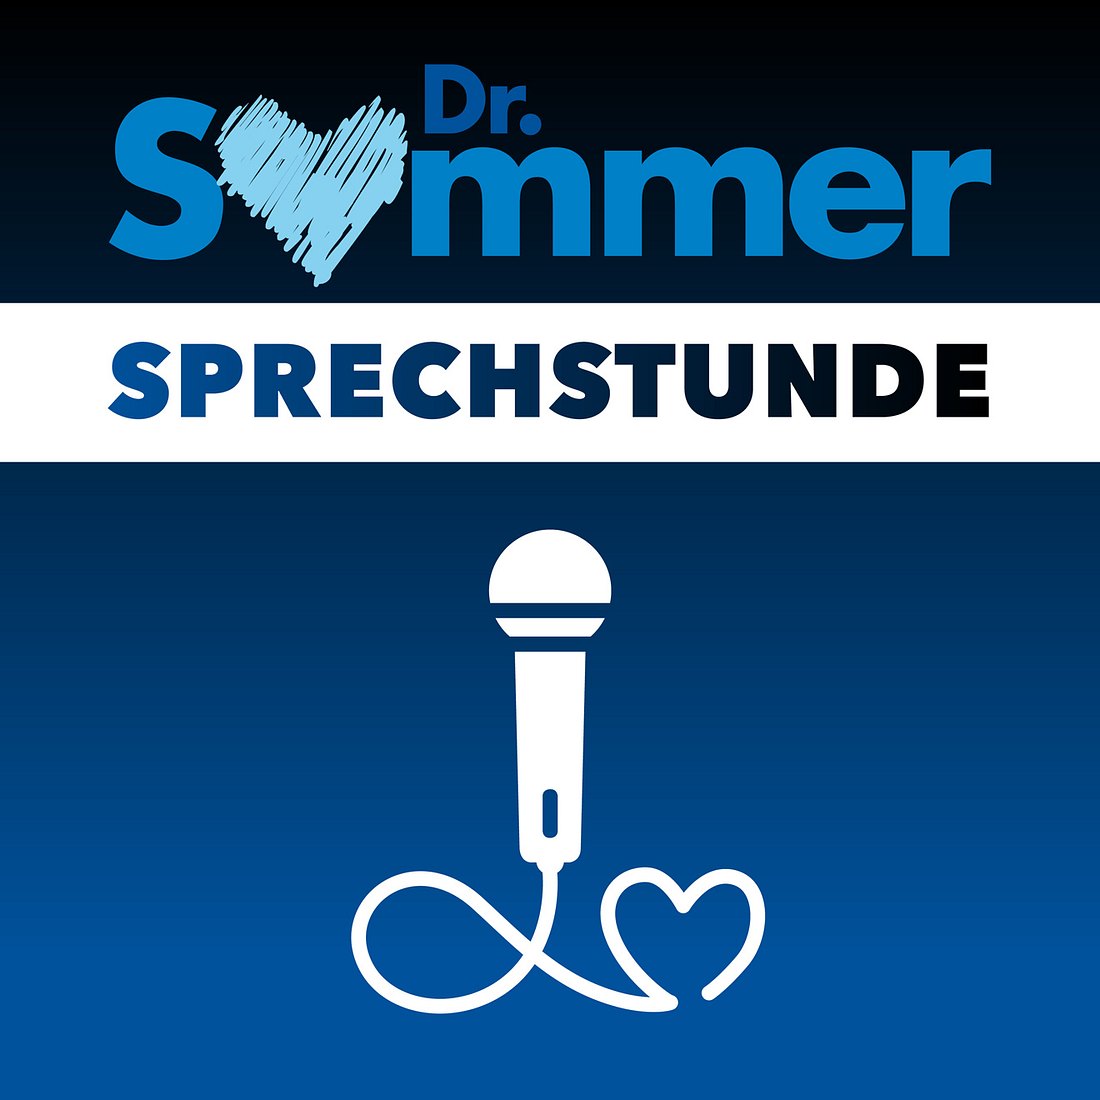 Dr. Sommer Sprechstunde Podcast